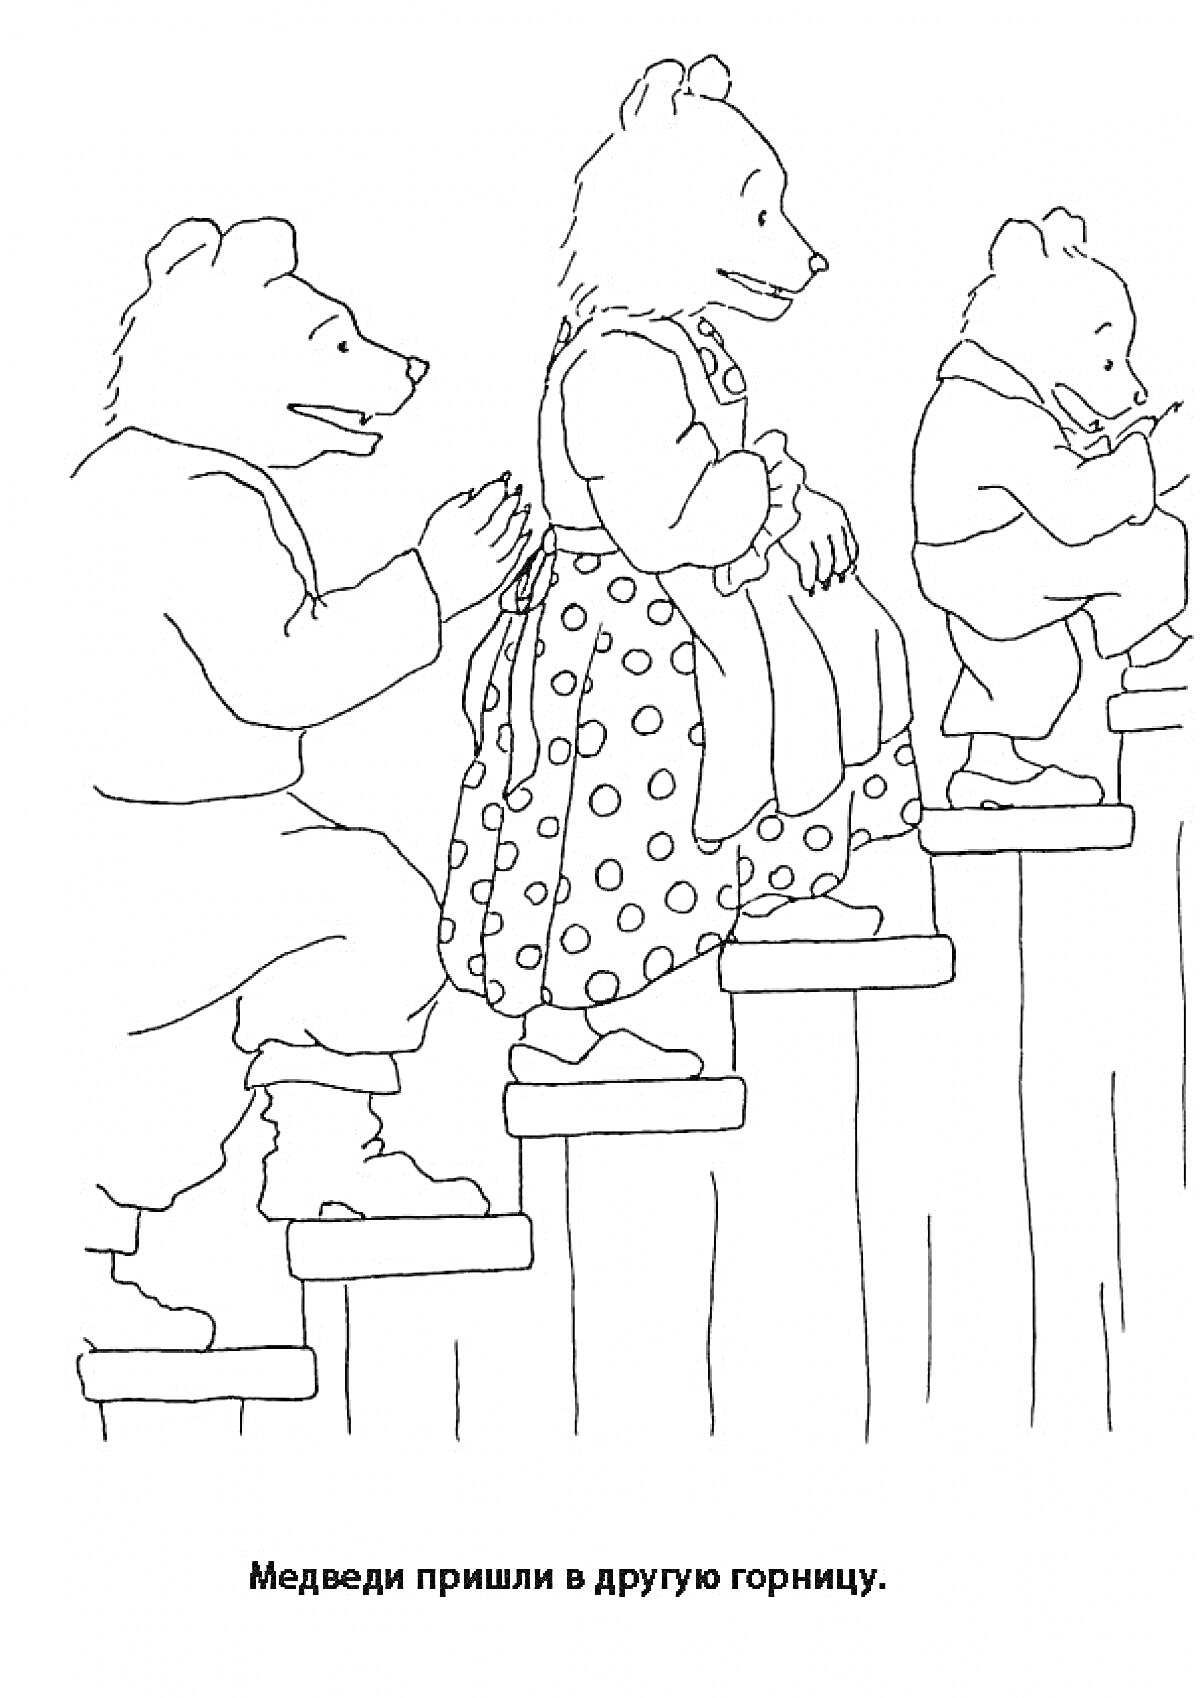 Три медведя поднимаются по ступенькам в другую горницу